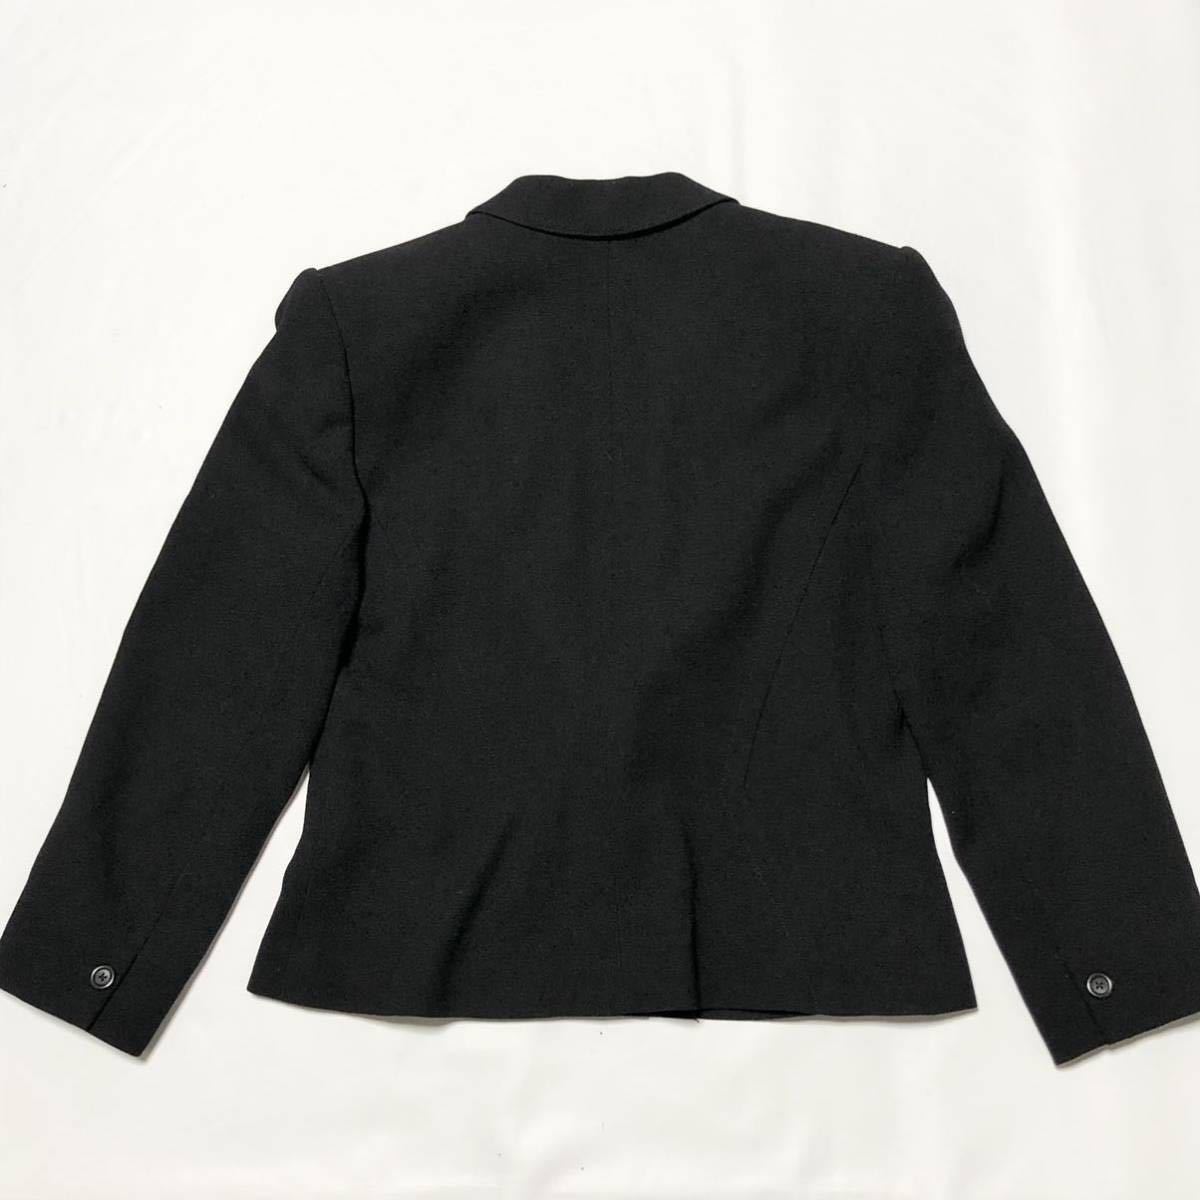 # превосходный товар #jun ashida Jun asida шерсть костюм верх и низ формальный size11(M~L) черный жакет юбка плечо накладка 